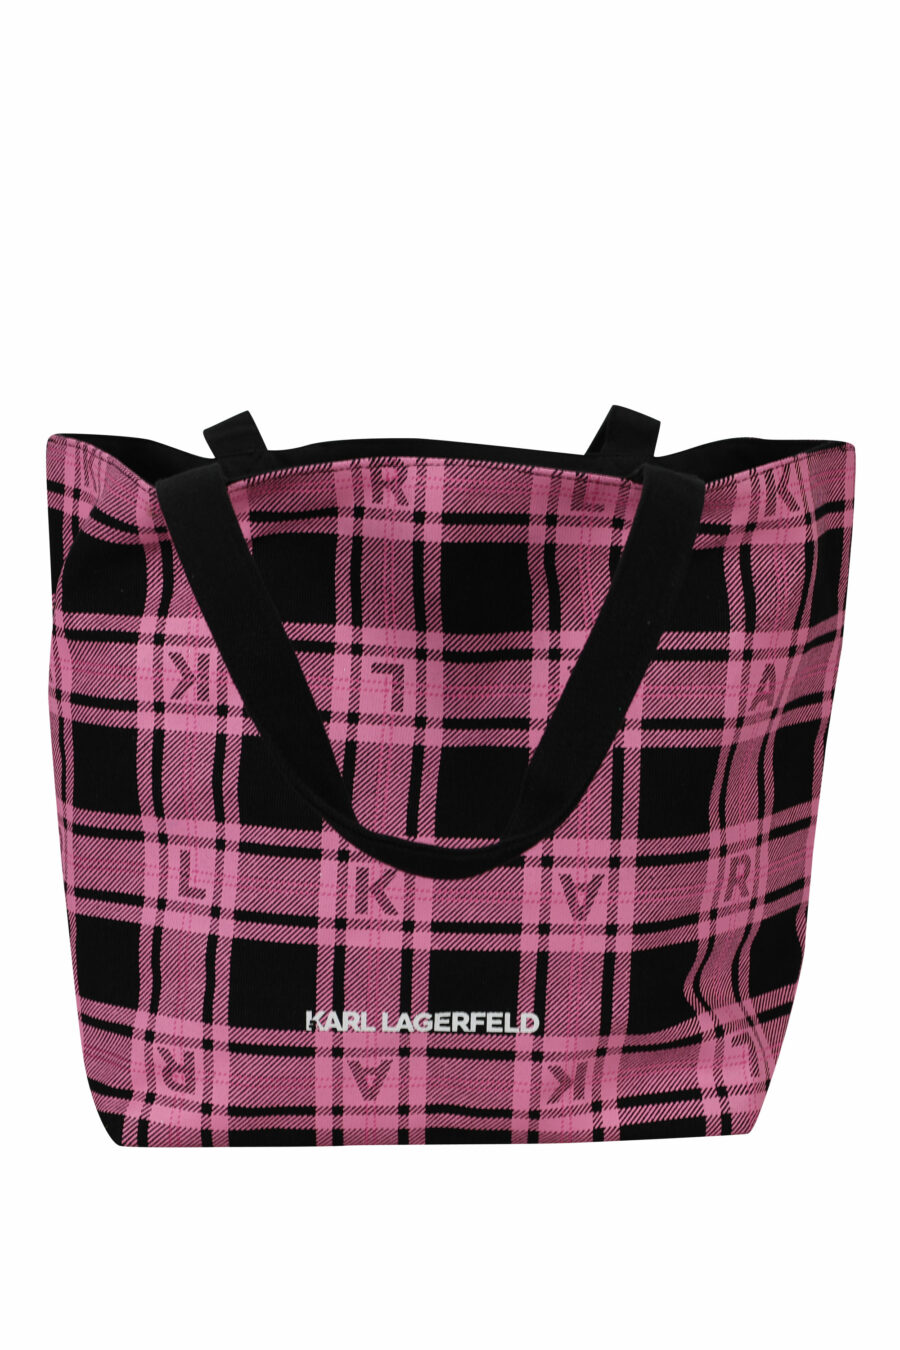 Tote bag reversible negro y rosa con maxilogo "choupette y karl" - 8720744676225 2